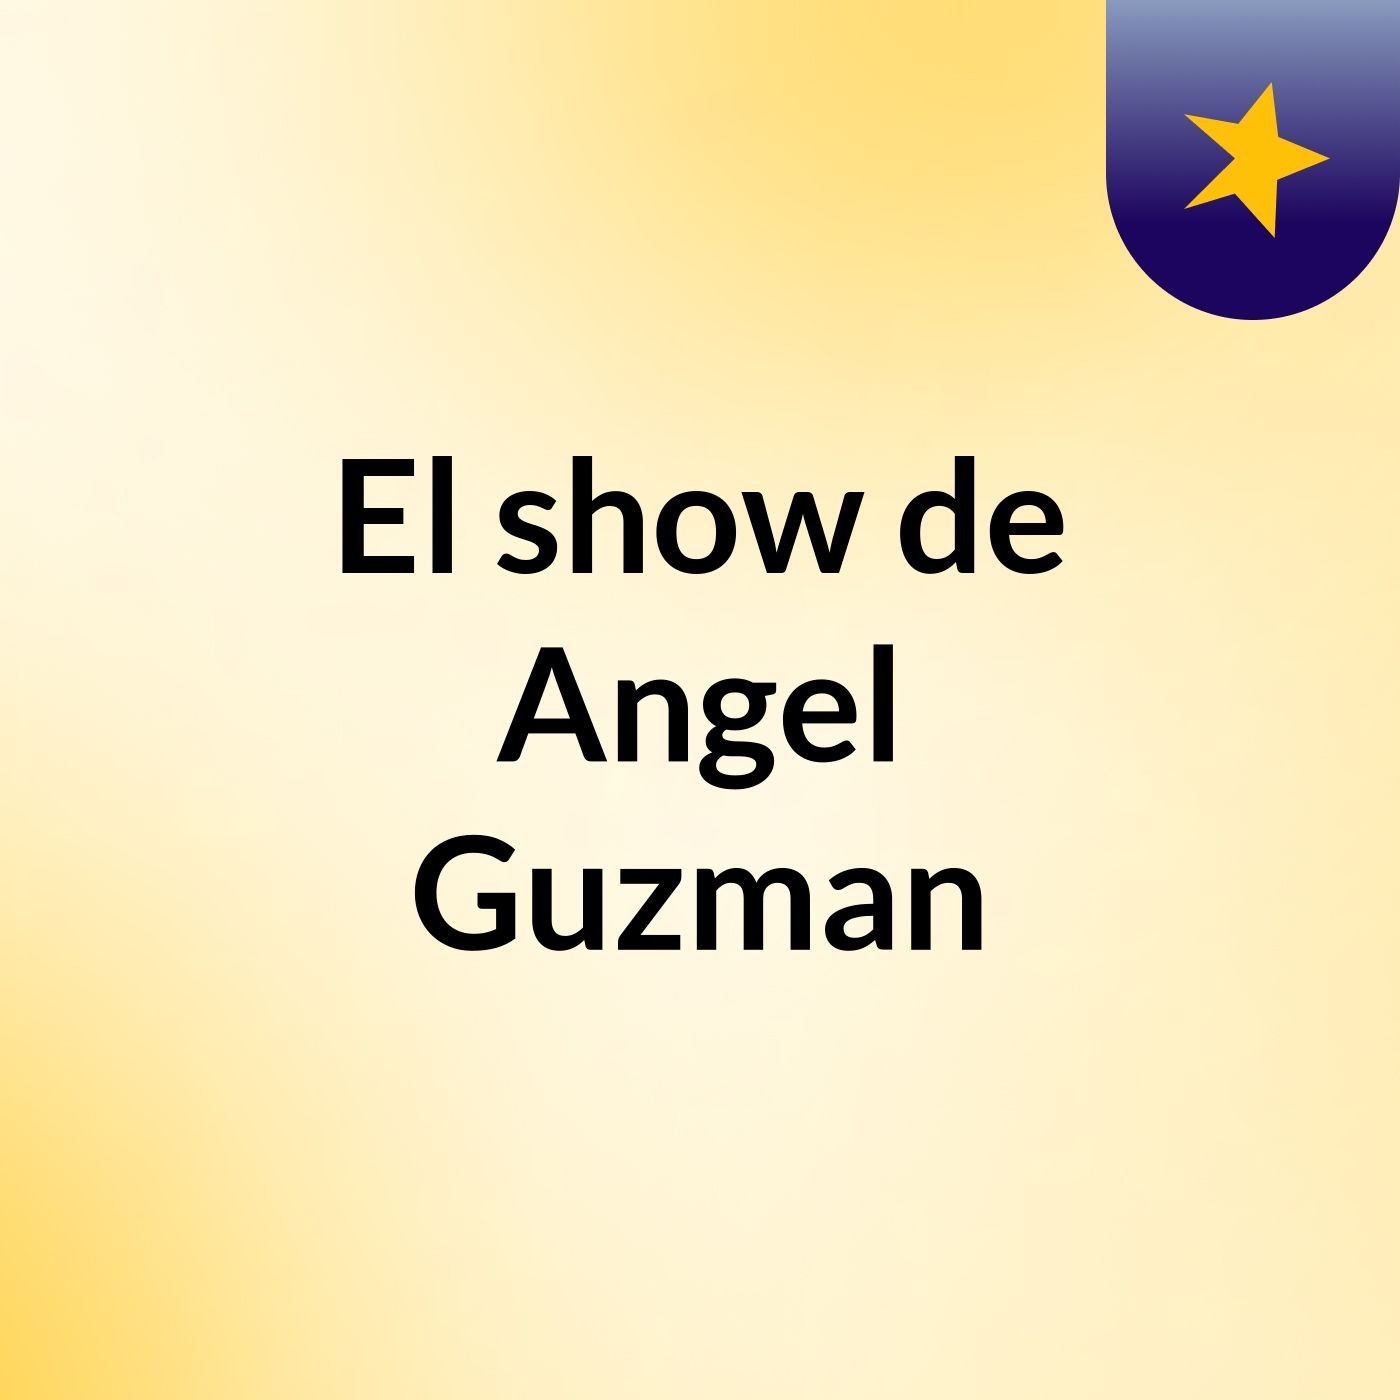 El show de Angel Guzman